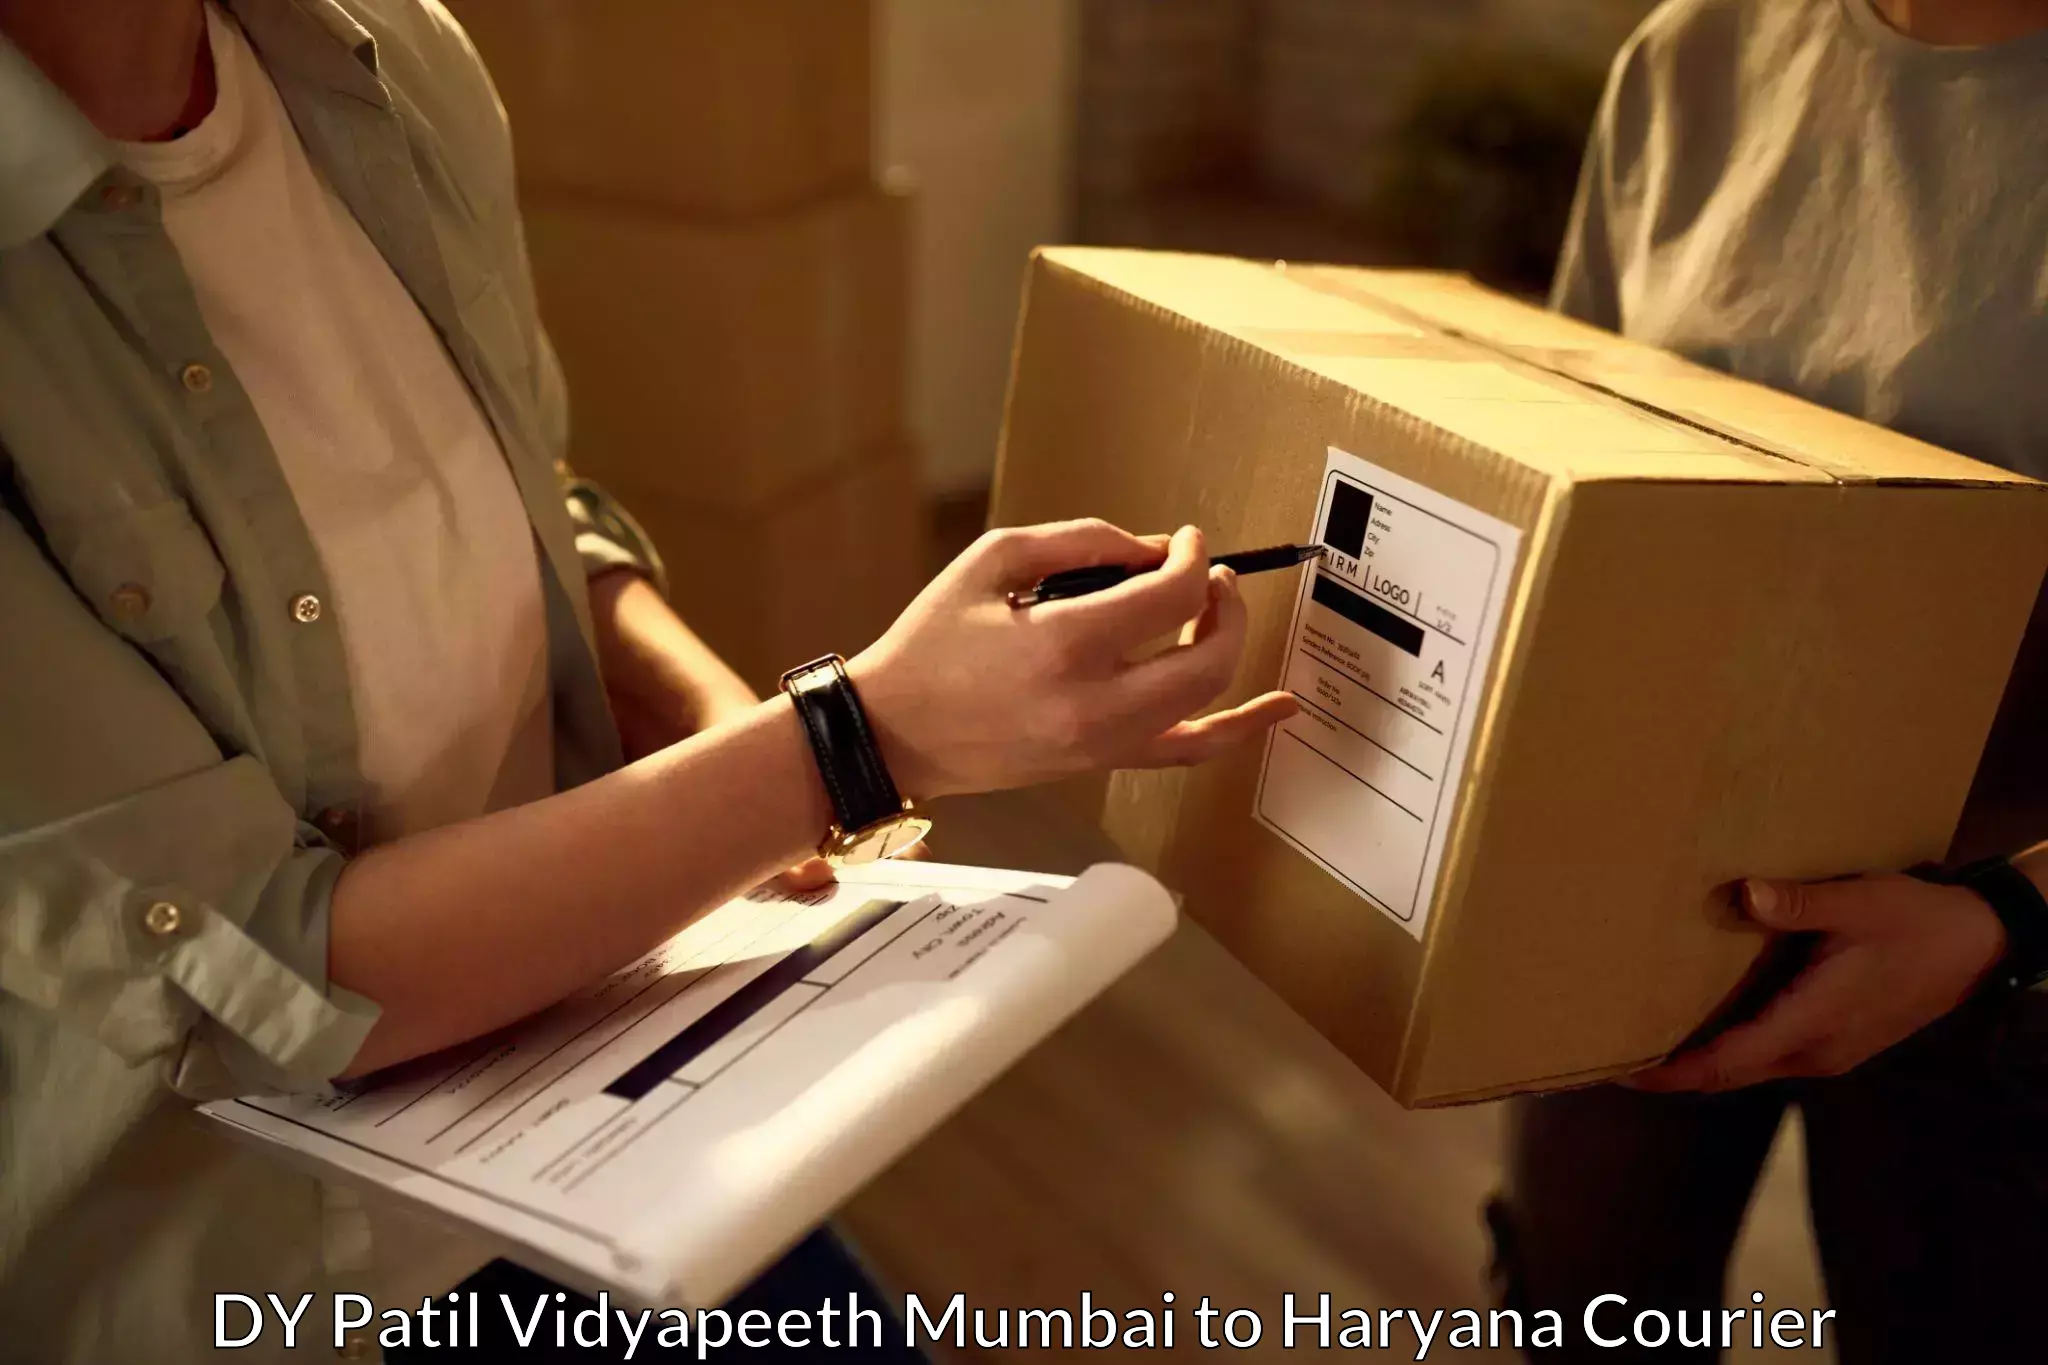 Express package handling DY Patil Vidyapeeth Mumbai to Haryana